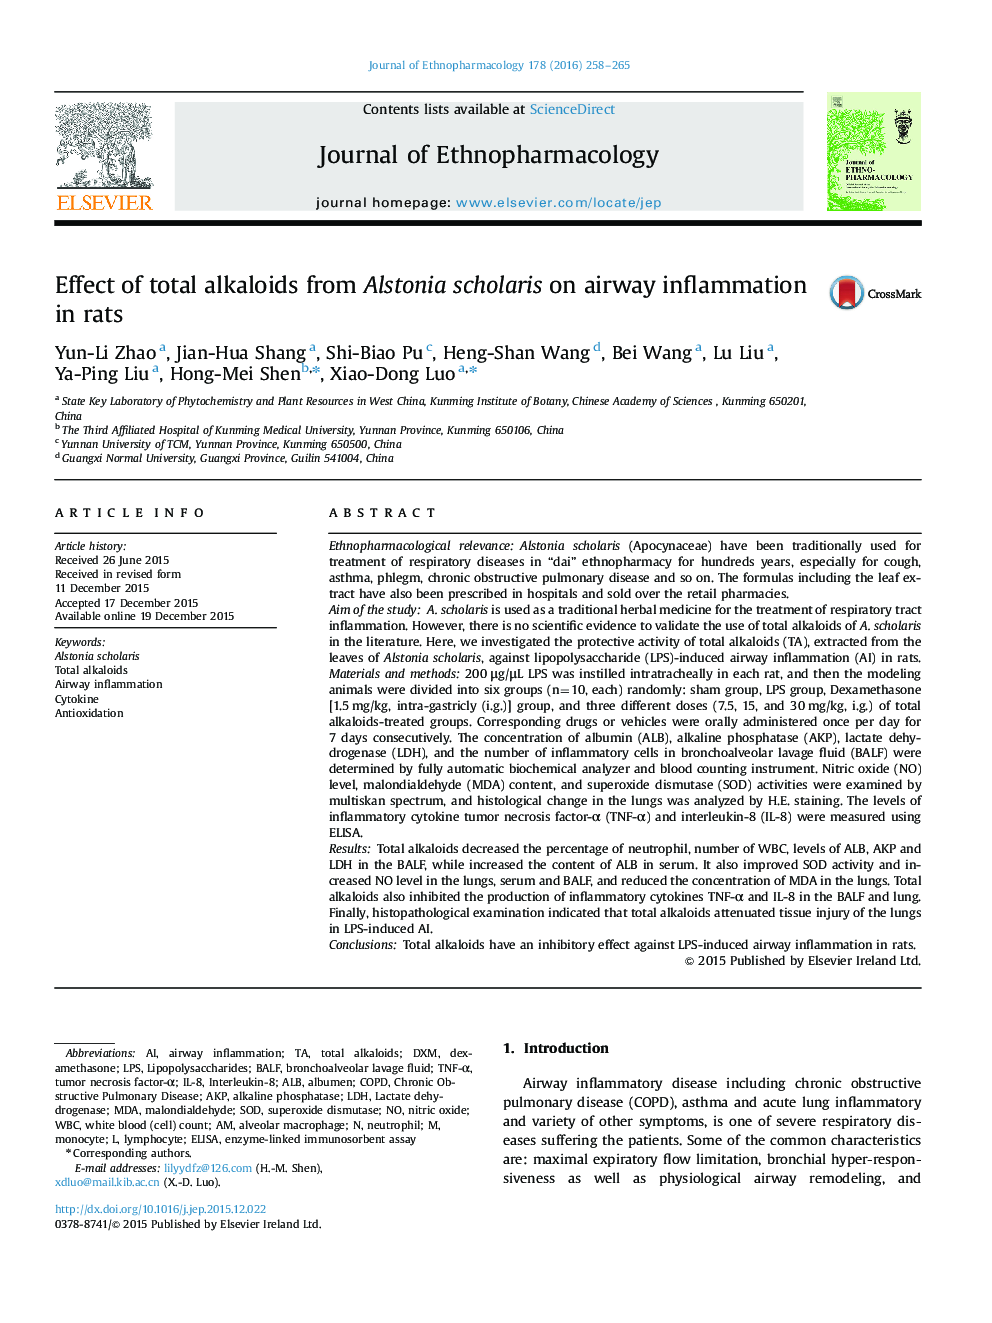 اثر کل آلکالوئیدهای آلستونیا اسکولاریس بر التهاب هوایی در موش صحرایی 